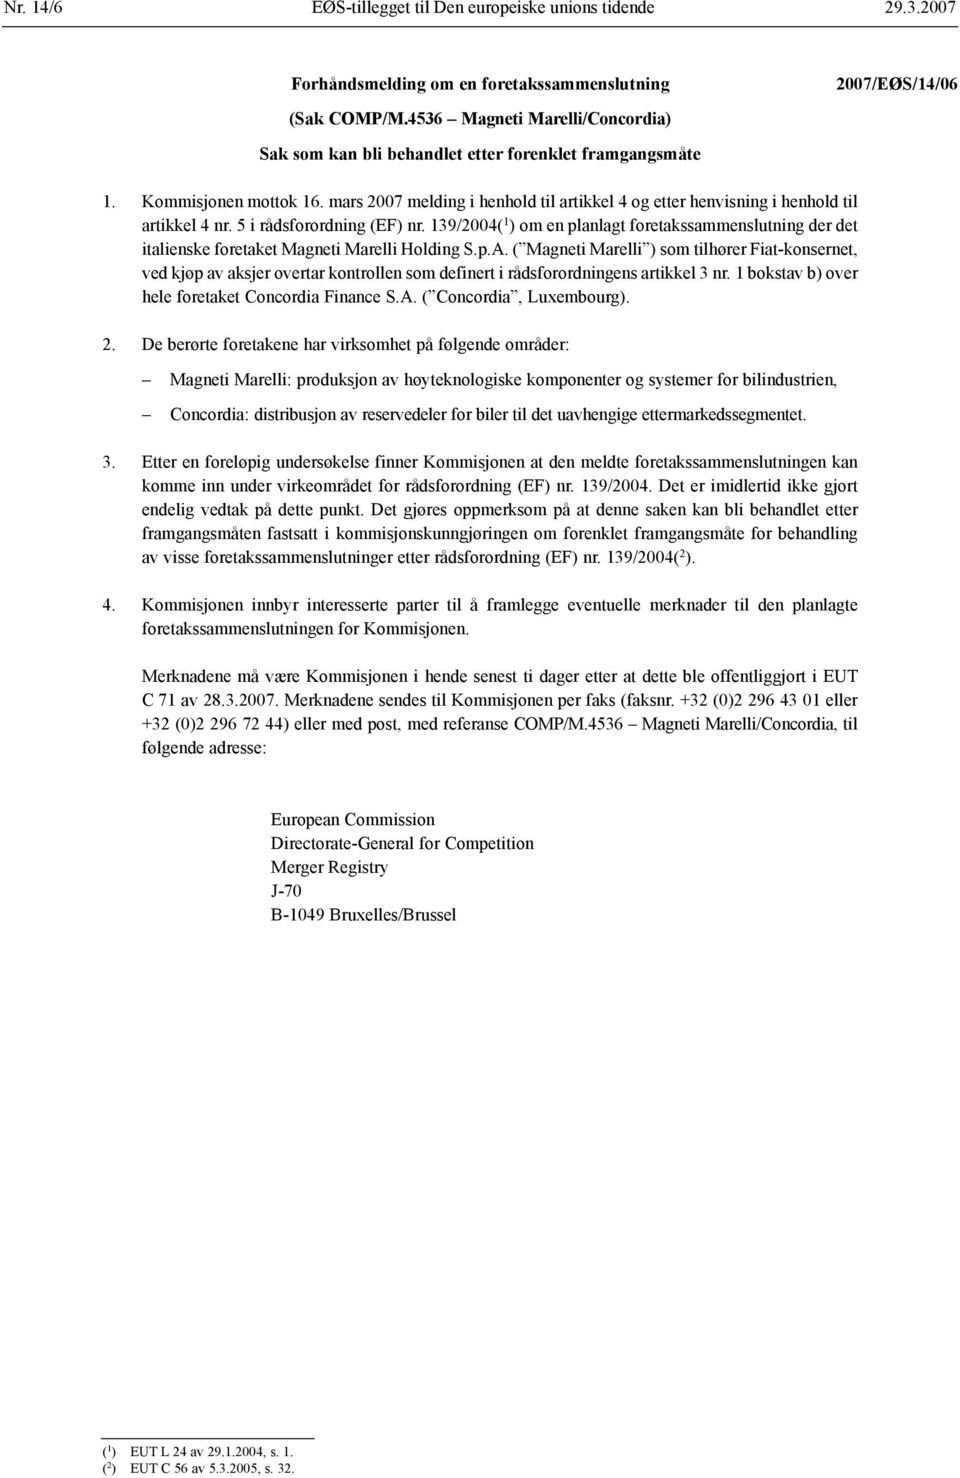 139/2004( 1 ) om en planlagt foretakssammenslutning der det italienske foretaket Magneti Marelli Holding S.p.A.